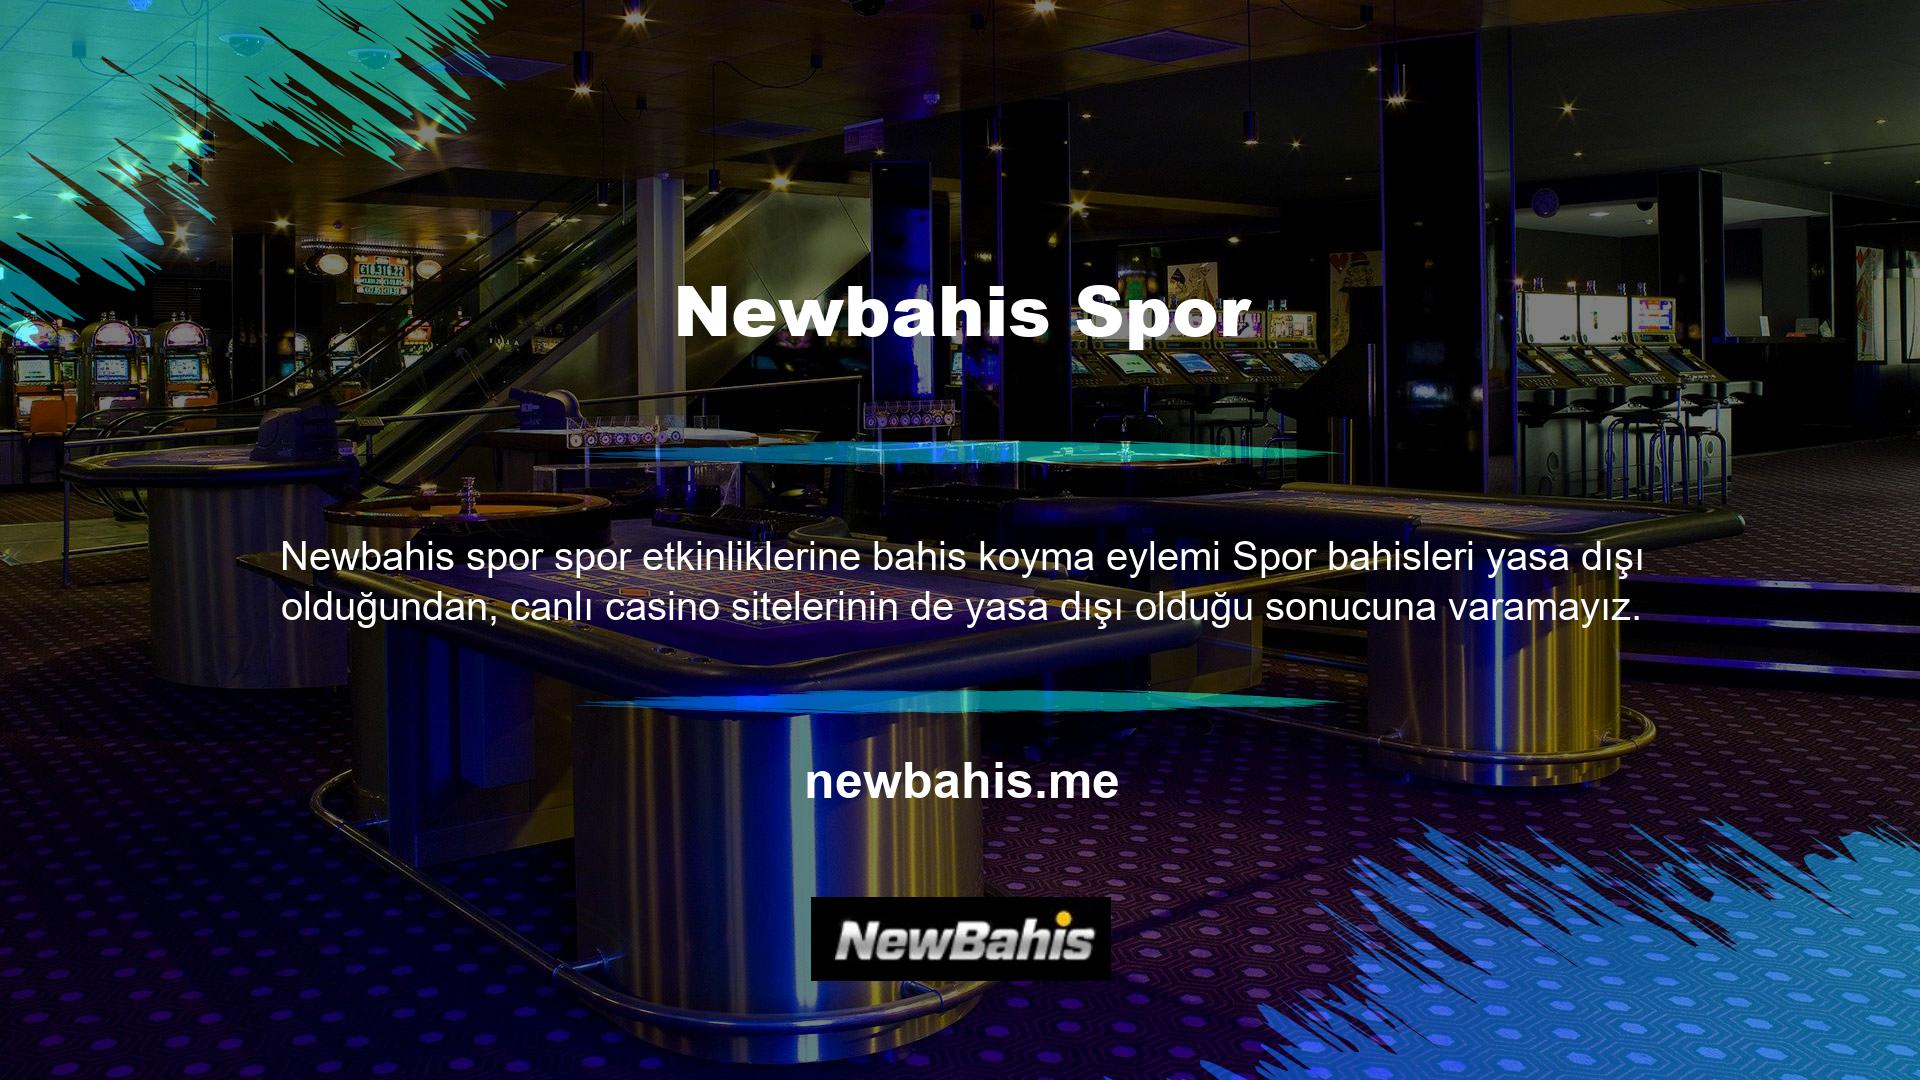 Casino sitelerinin yeni yeri Newbahis ve üyelerimizin ve kendimizin güvenliğini sağlamak için sıkı güvenlik önlemleri uyguladık